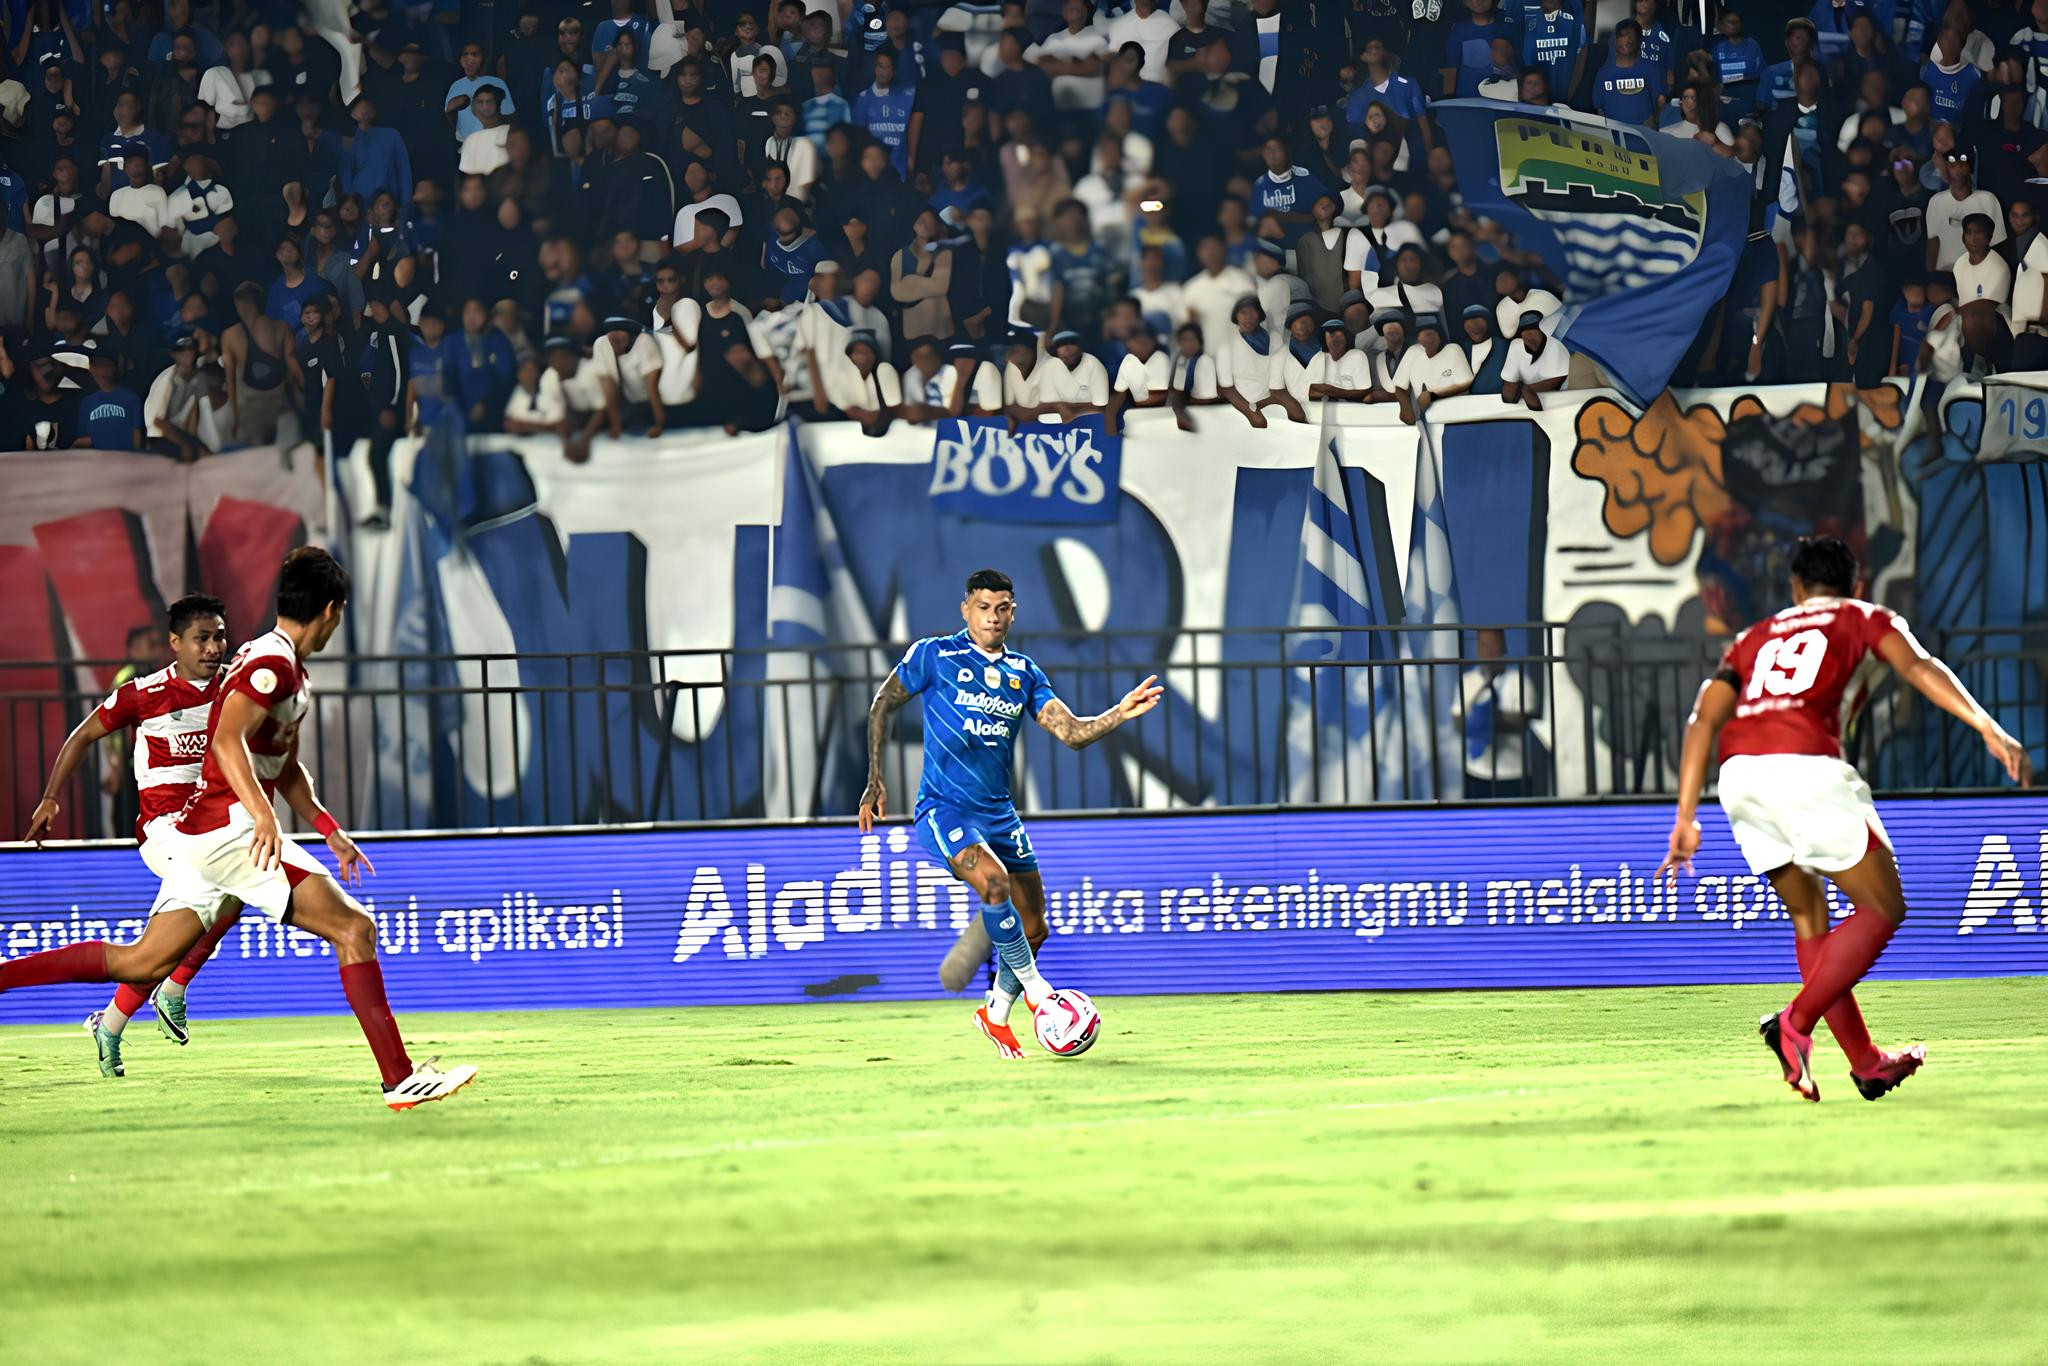 Persib vs Madura United: Ciro Alves dan David da Silva Tajam, Maung Bandung Berpesta